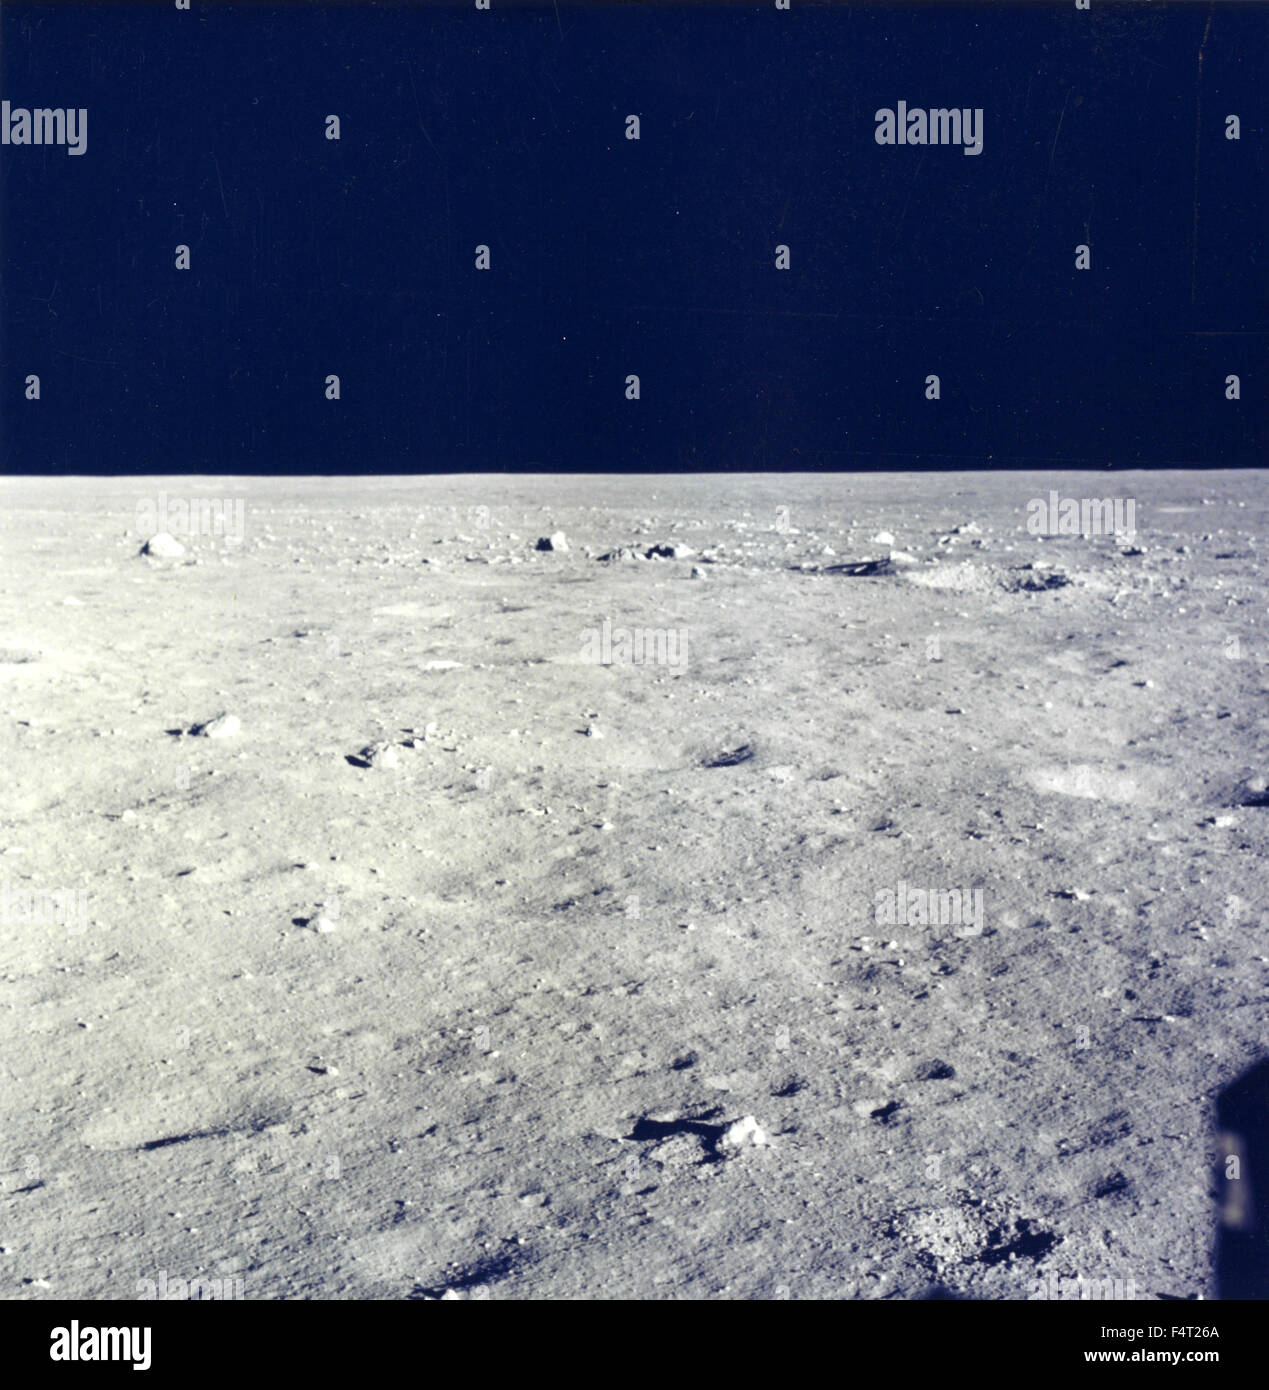 La surface de la lune à partir de la fenêtre du module lunaire d'Apollo 11, la Lune Banque D'Images